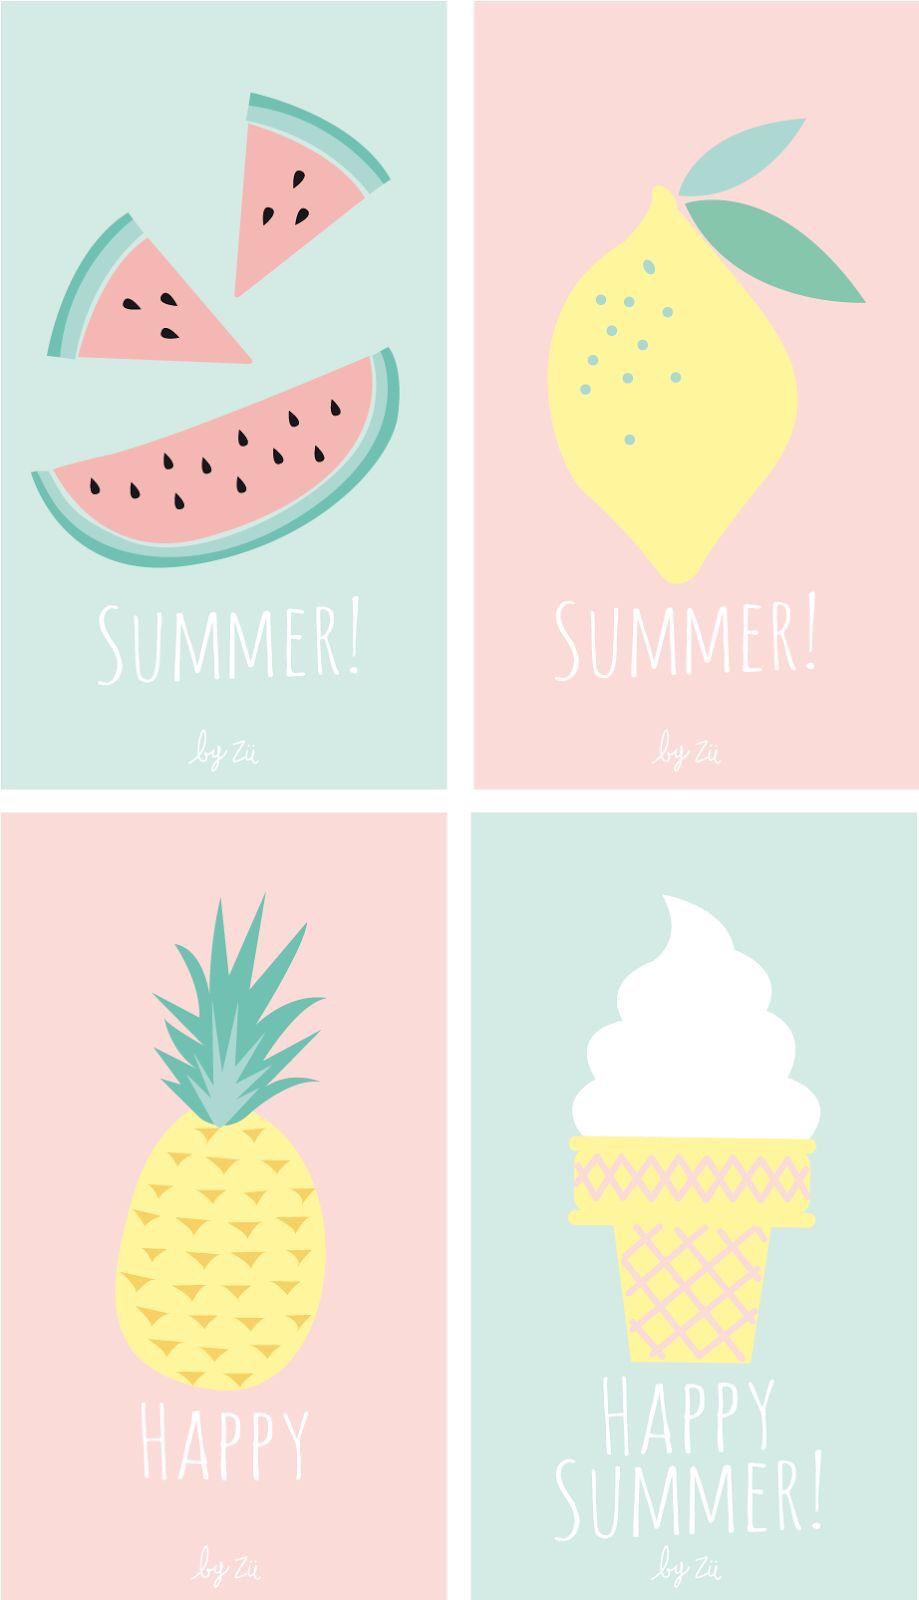 Happy Summer!!. Summer wallpaper, Cute summer wallpaper, iPhone wallpaper